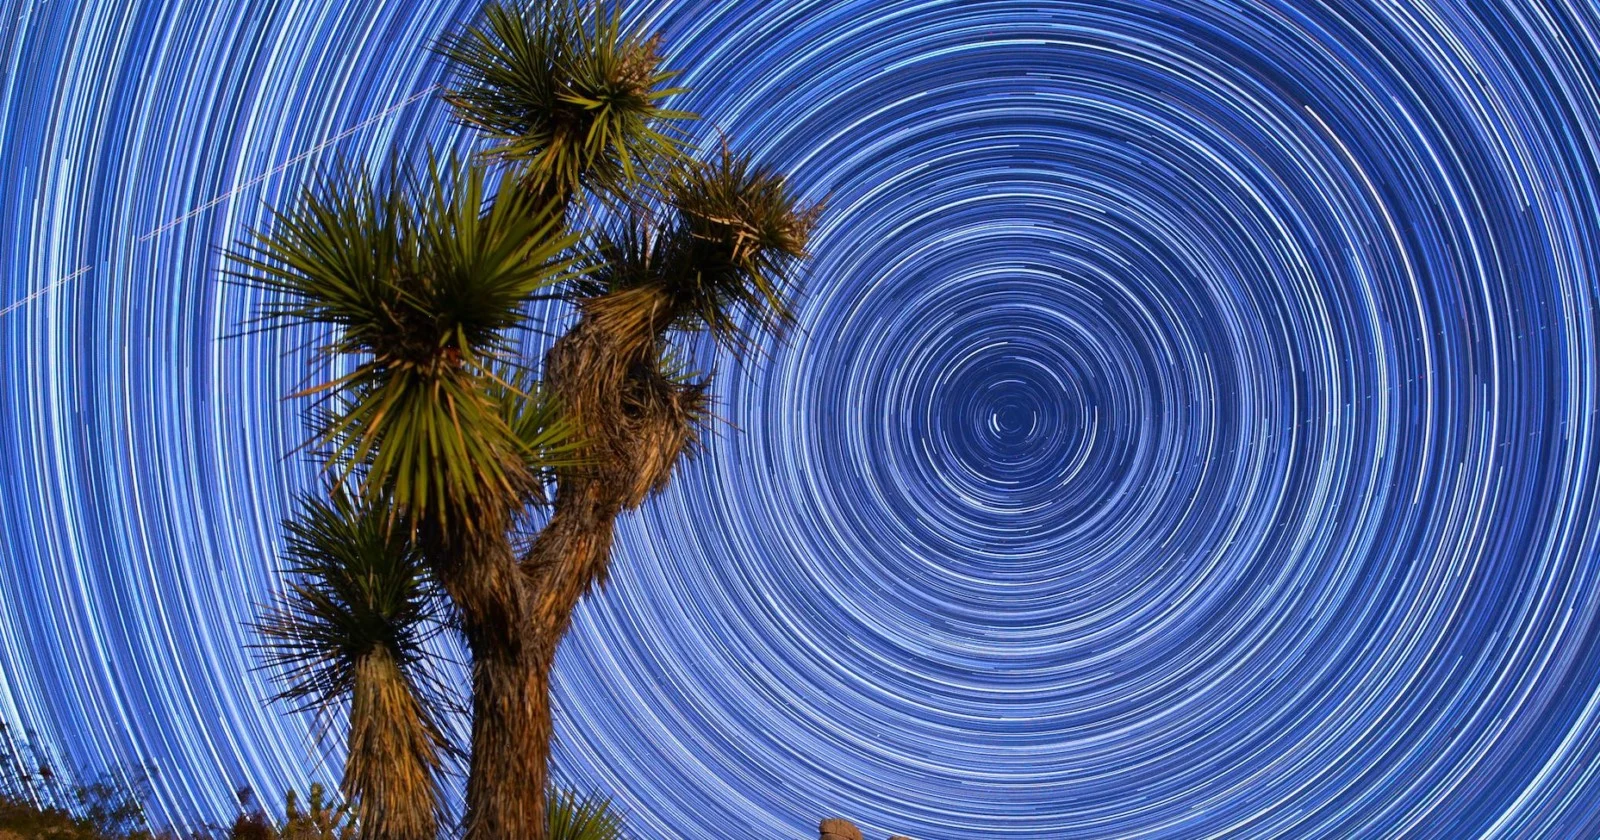 Mojave Çölü'nde yıldızlar ve dolunay eşliğinde muazzam bir timelapse! LAOWA